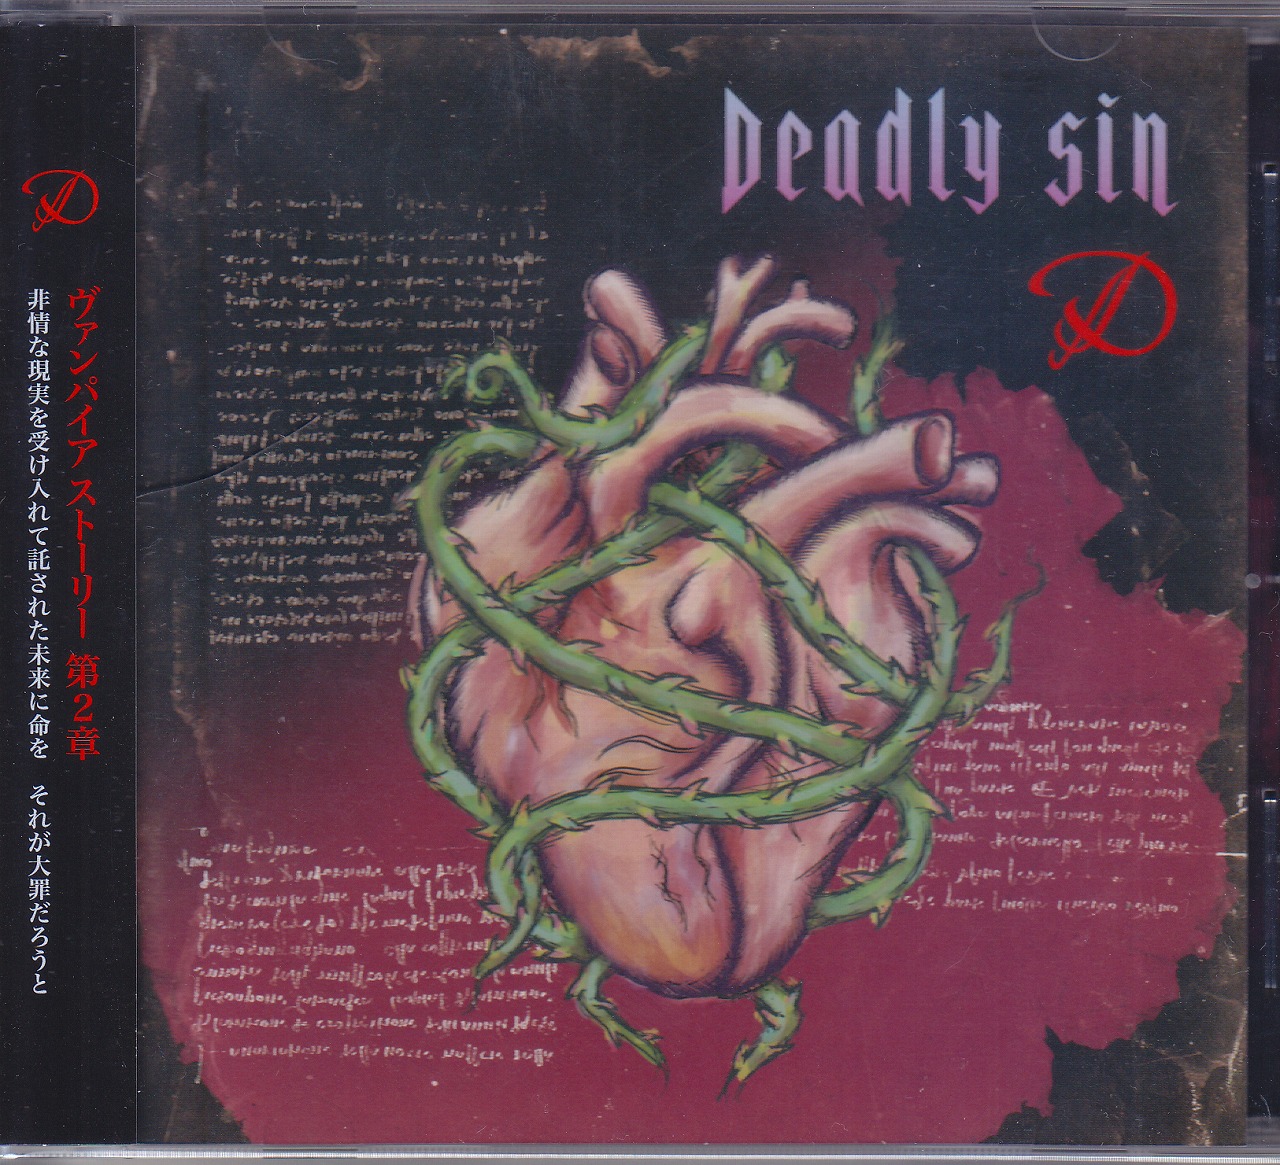 ディー の CD 【TYPE-C】Deadly sin